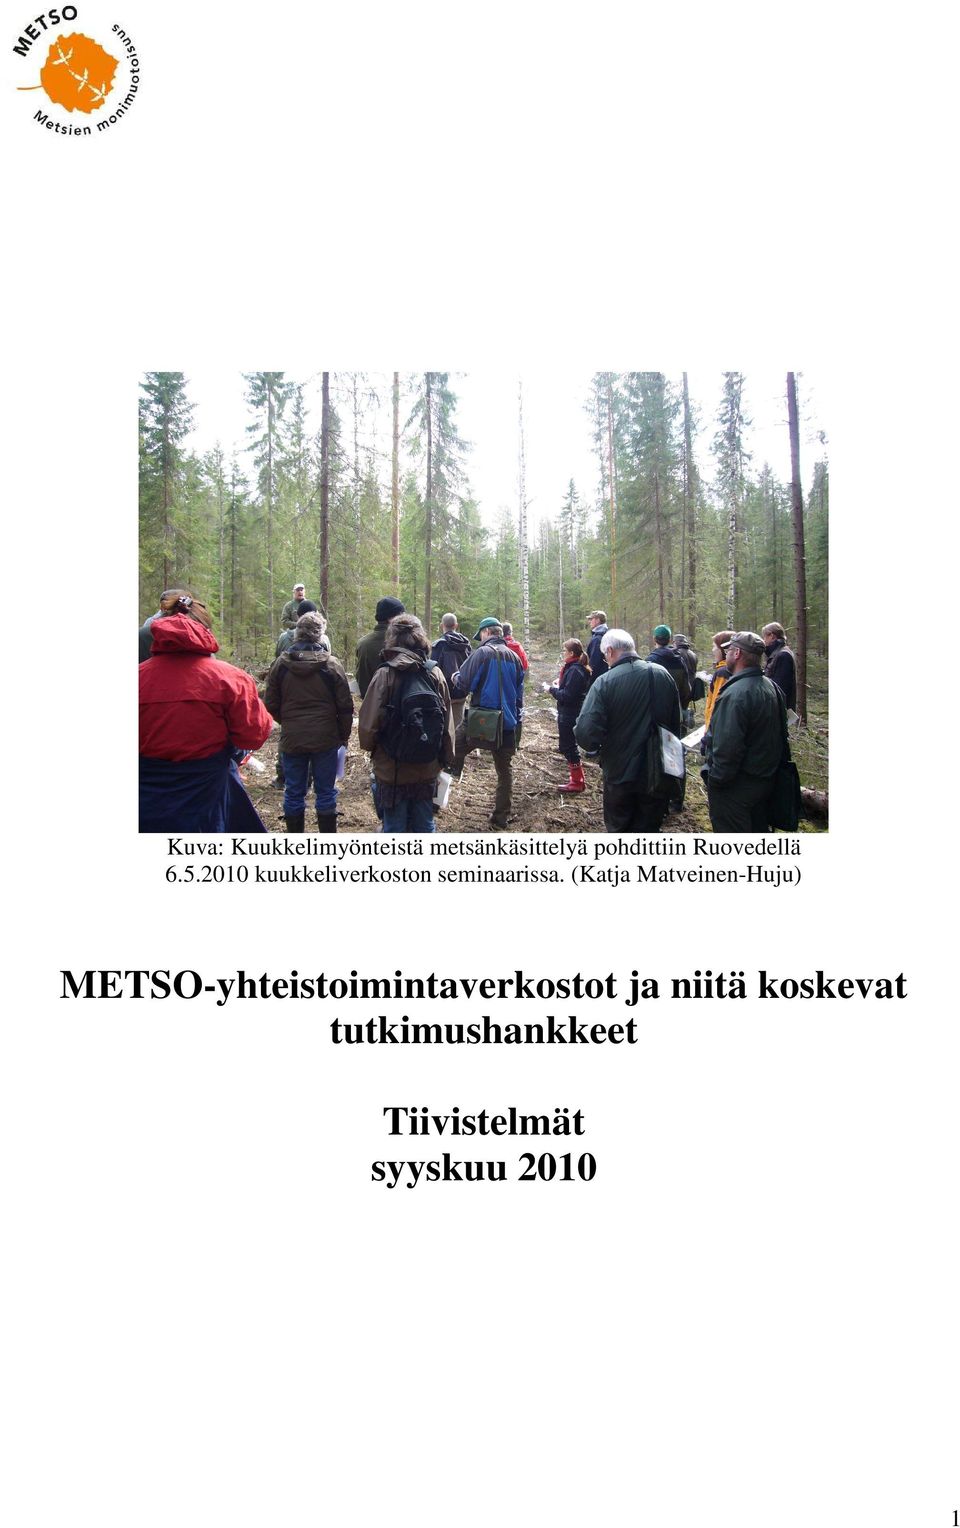 (Katja Matveinen-Huju) METSO-yhteistoimintaverkostot